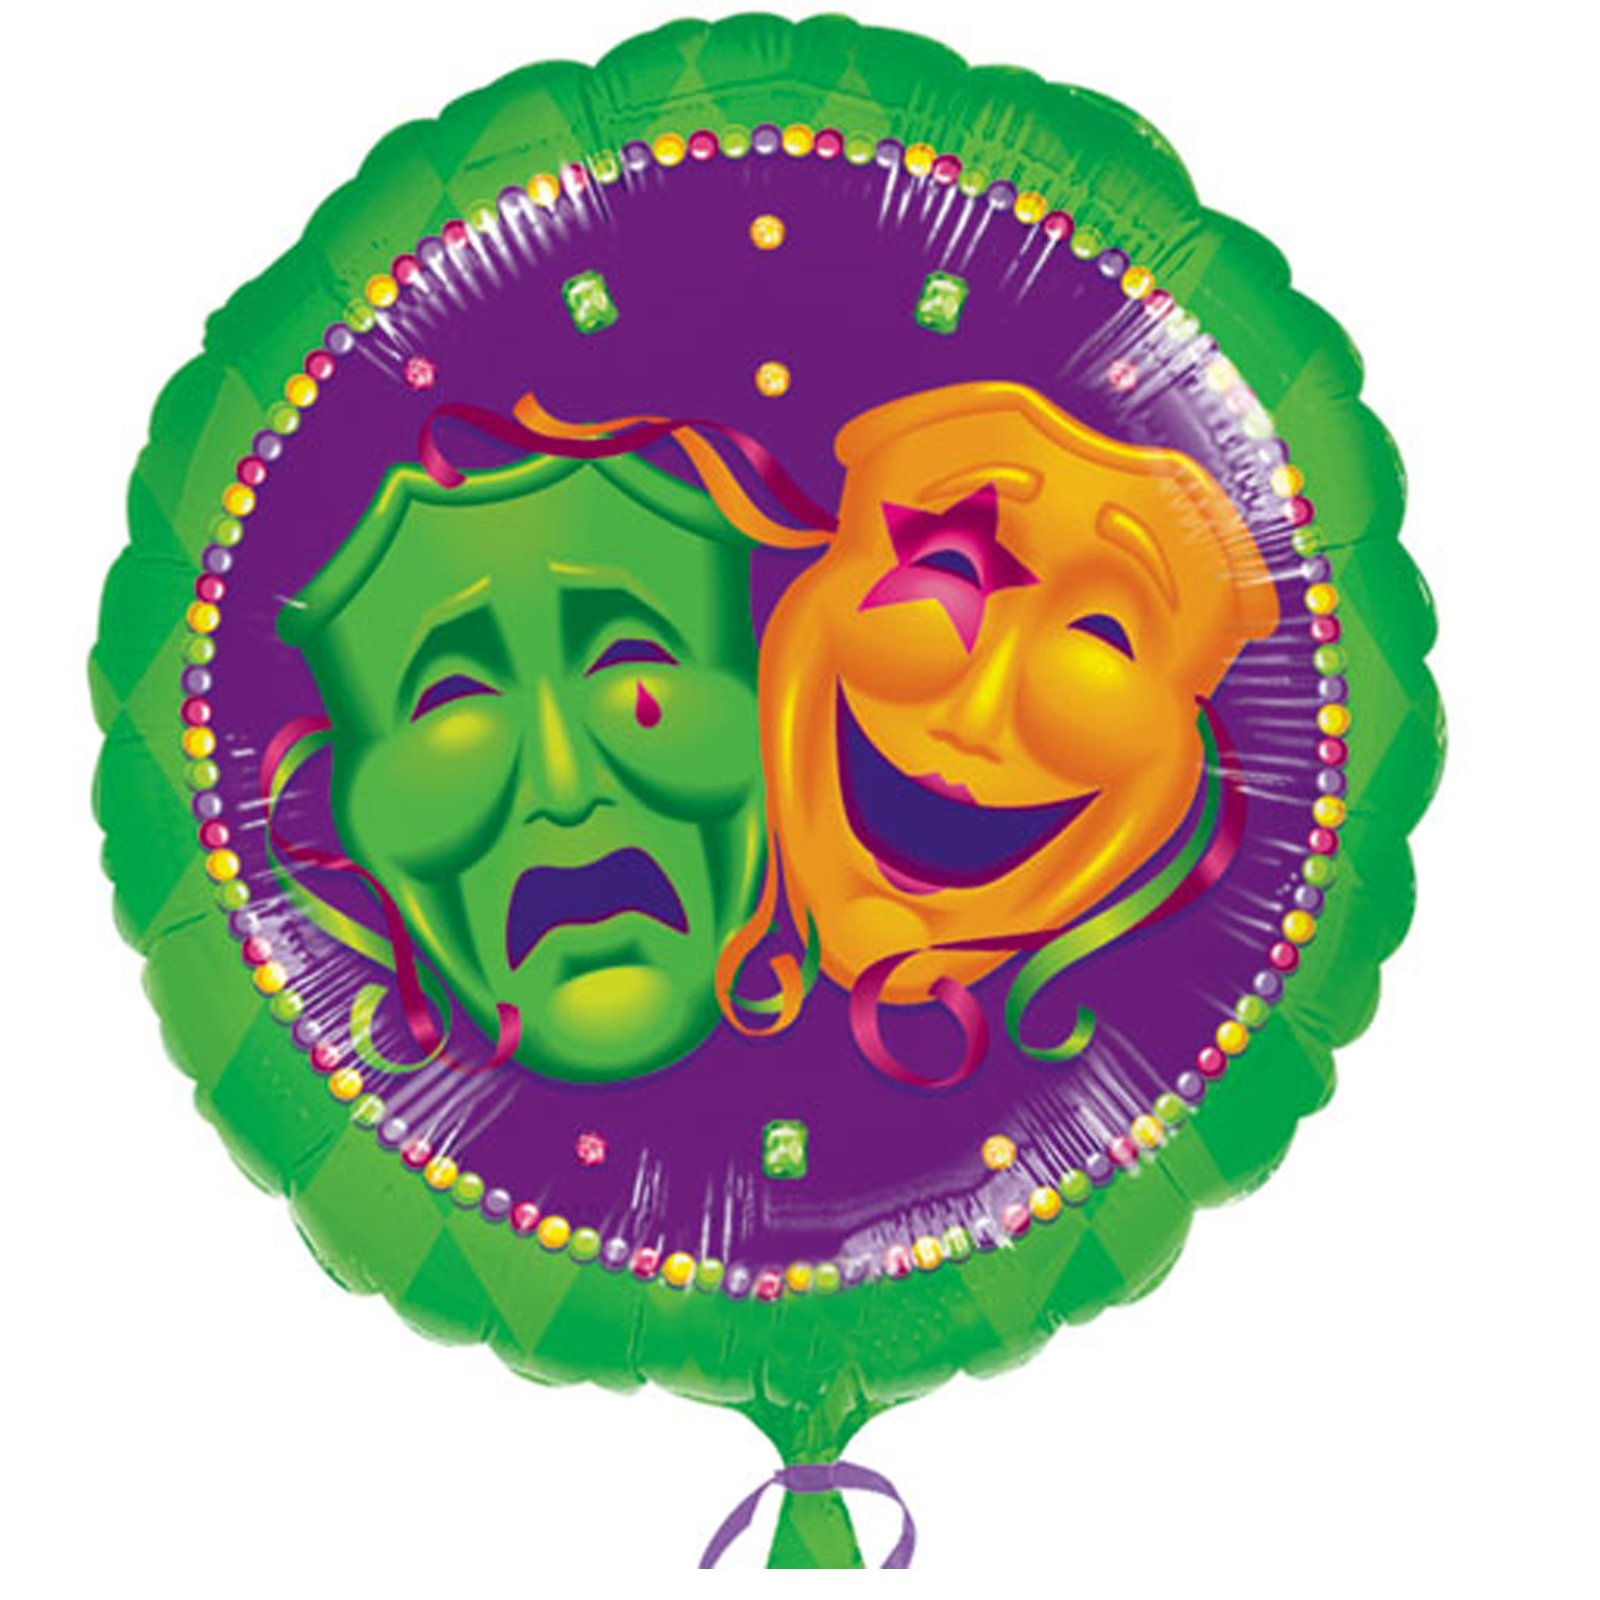 Masquerade Comedy/Tragedy Faces 18" Foil Balloon - Click Image to Close